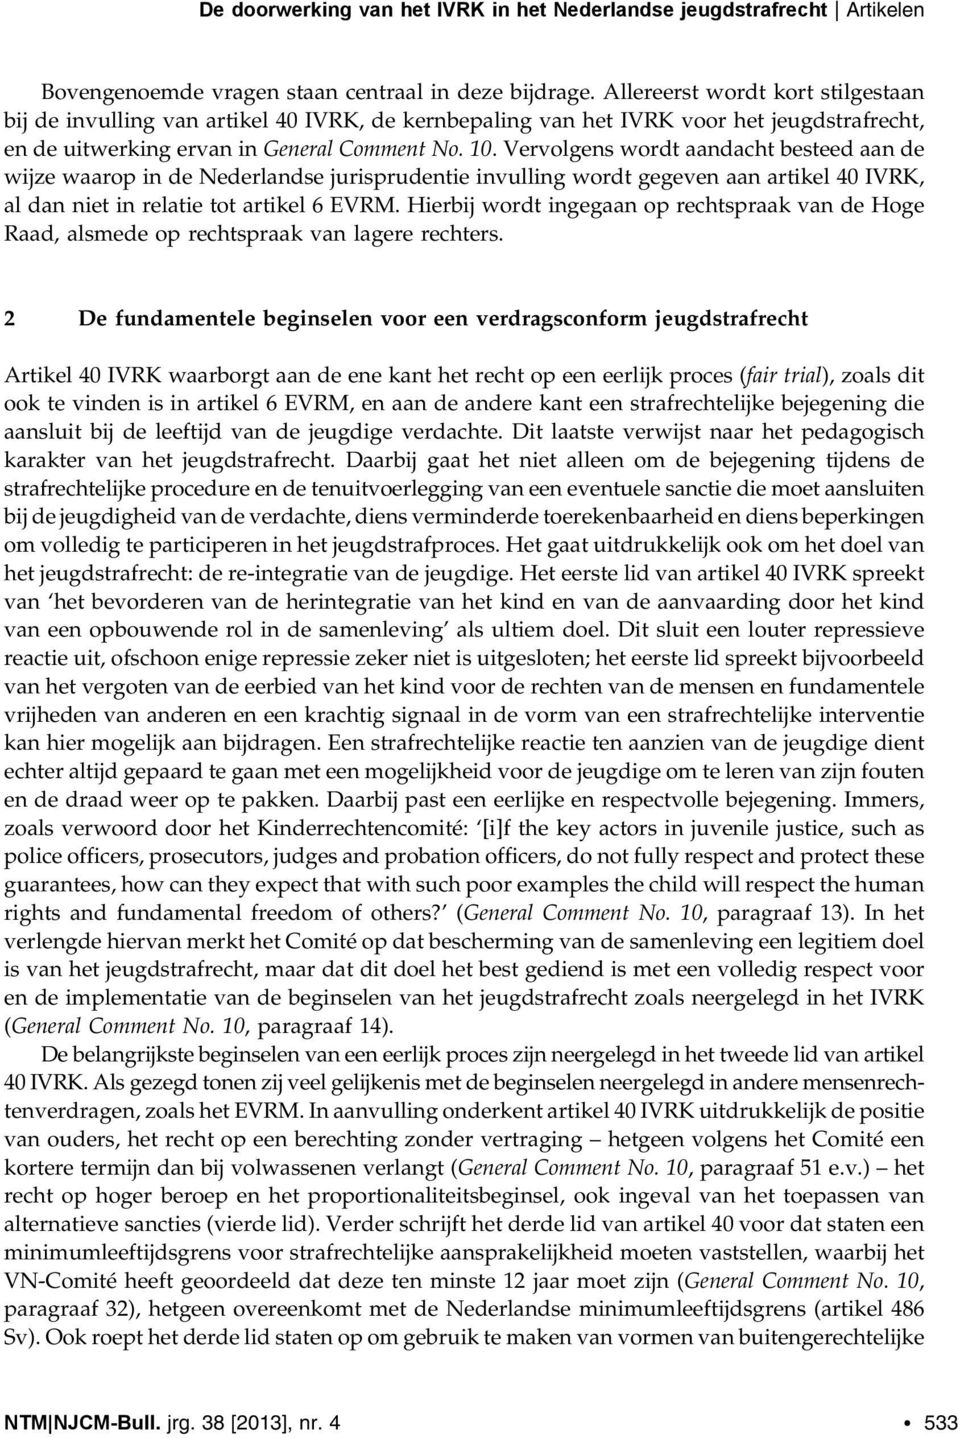 Vervolgens wordt aandacht besteed aan de wijze waarop in de Nederlandse jurisprudentie invulling wordt gegeven aan artikel 40 IVRK, al dan niet in relatie tot artikel 6 EVRM.